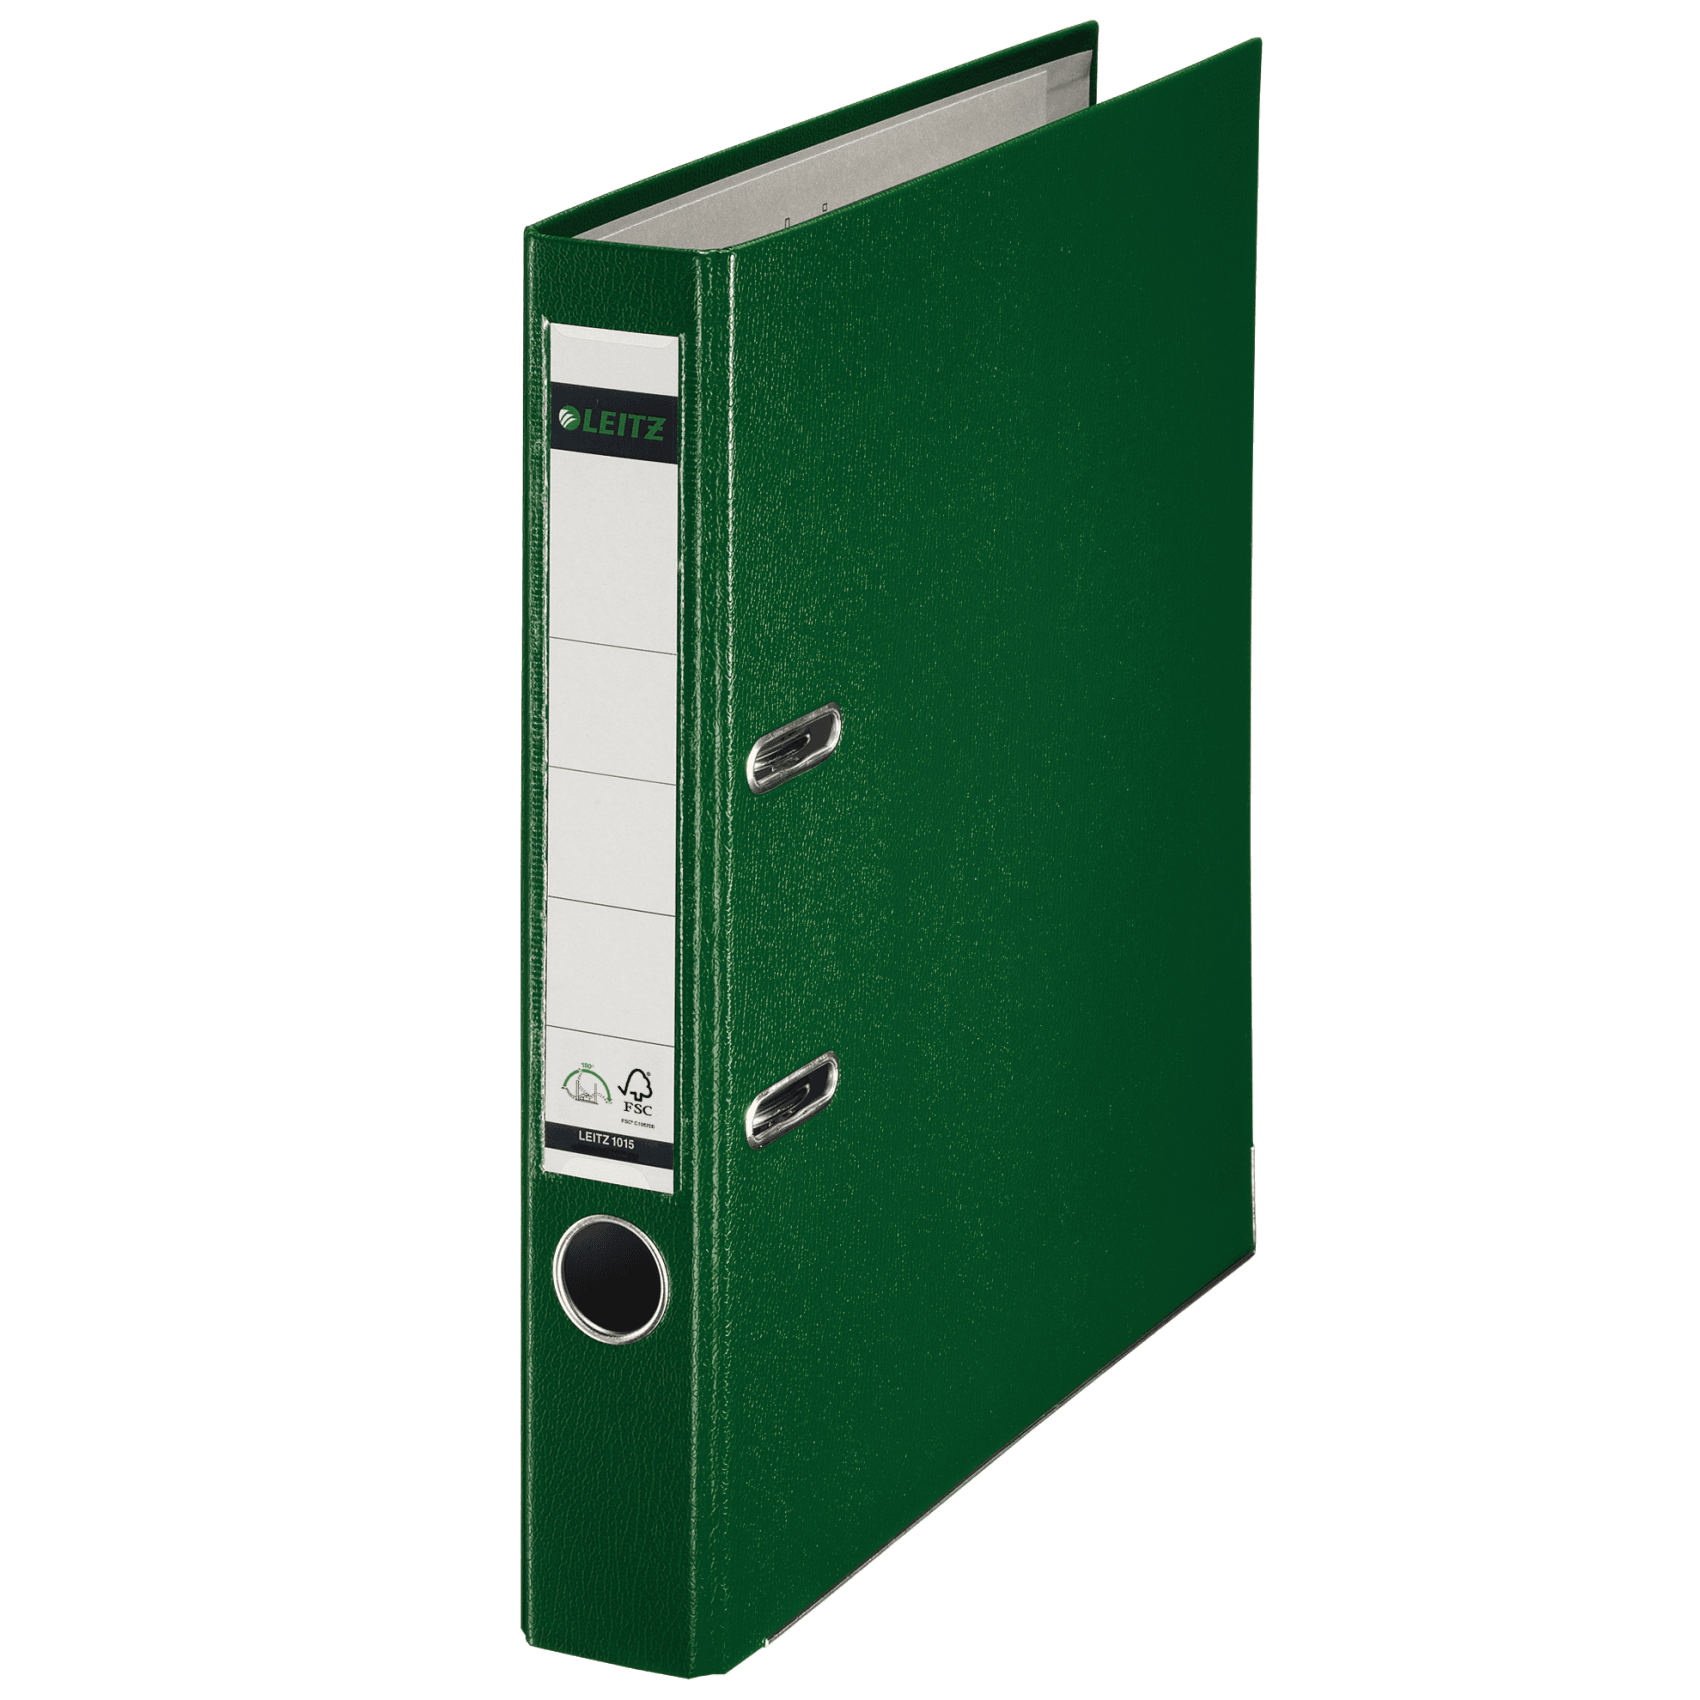 Pákový pořadač Leitz 180, A4, 52 mm, PP/karton, se spodním kováním, zelený